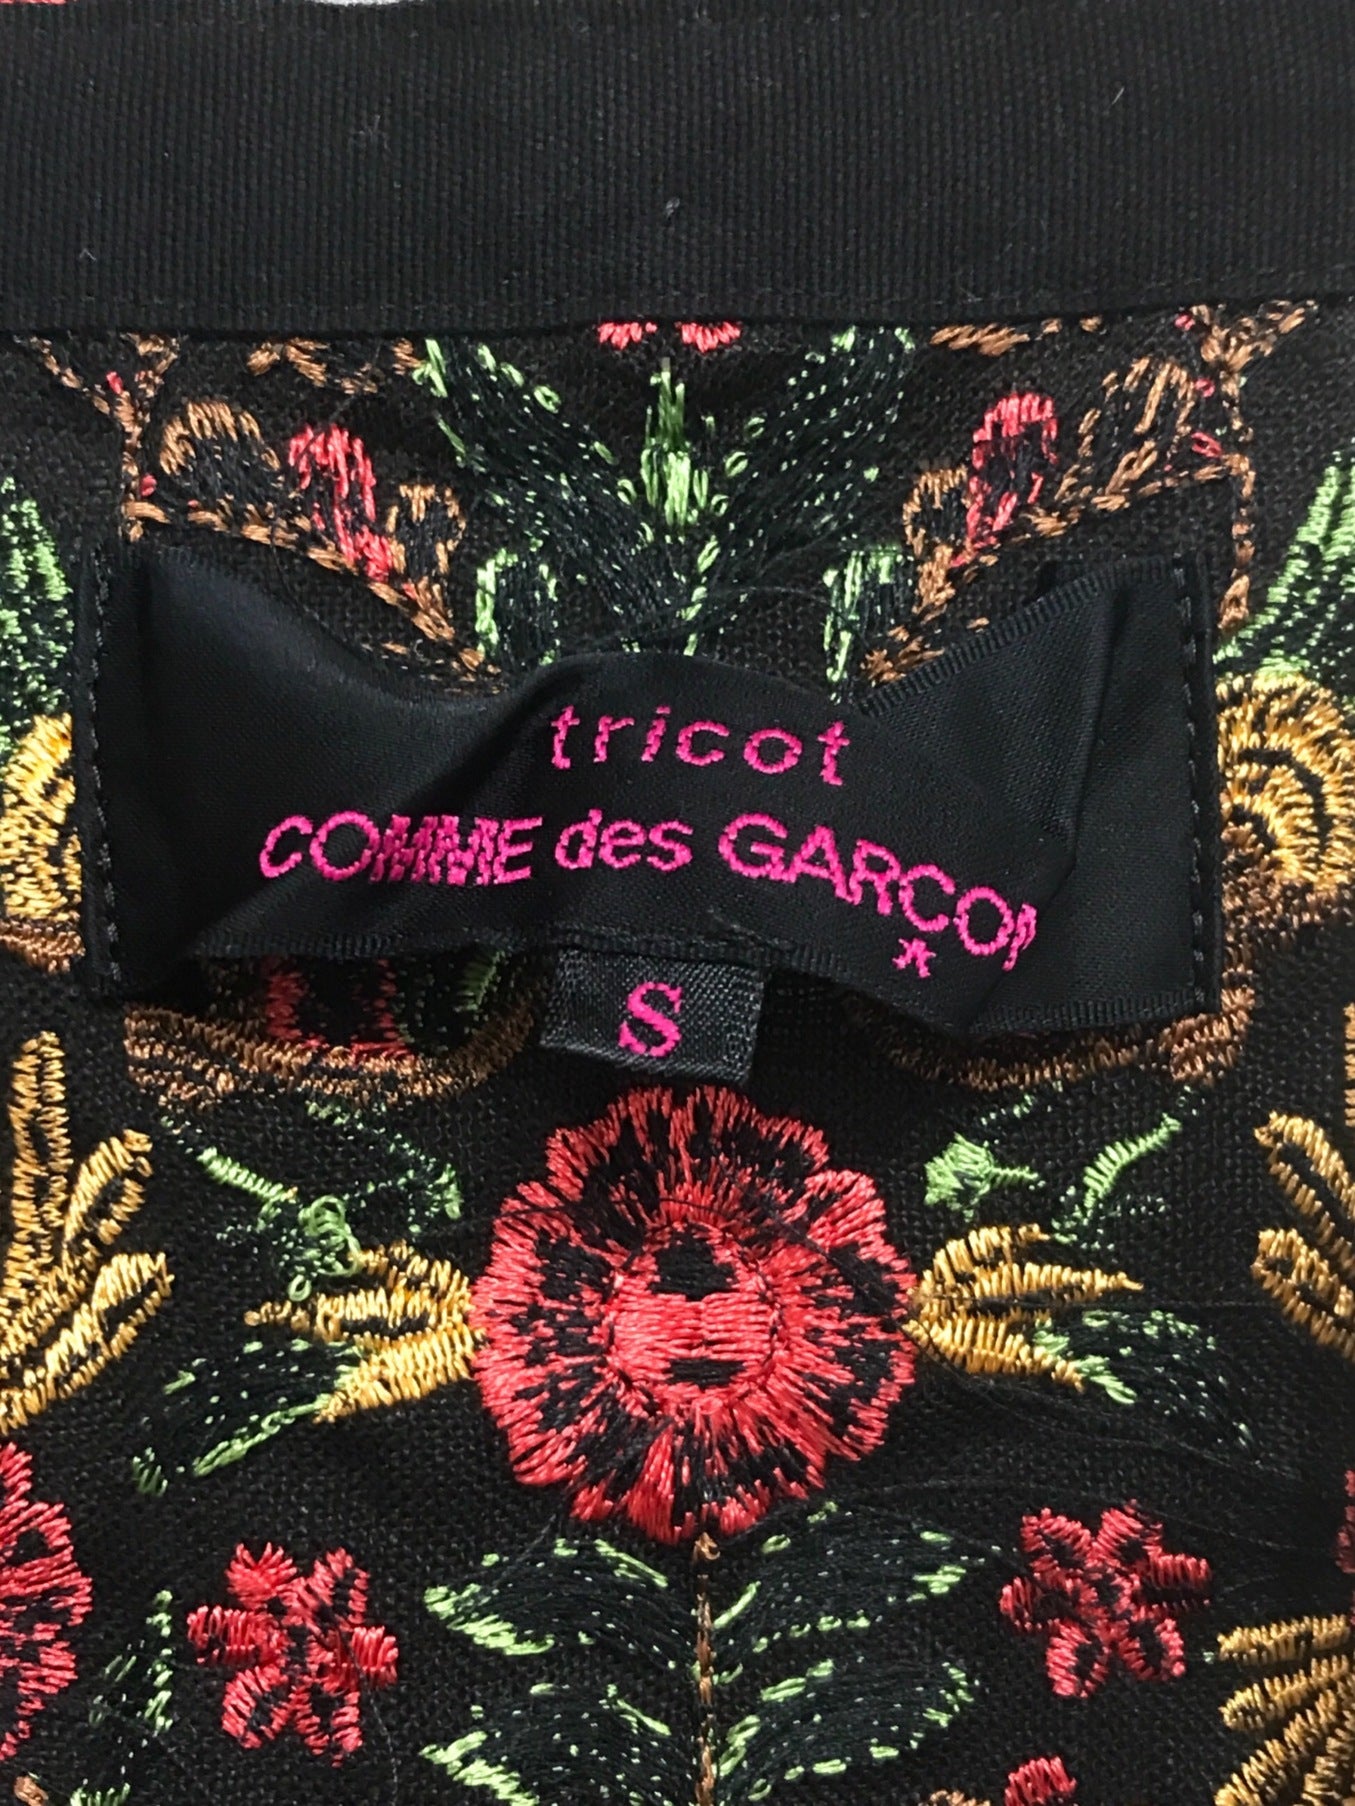 Tricot Comme des Garcons環繞裙TE-S207